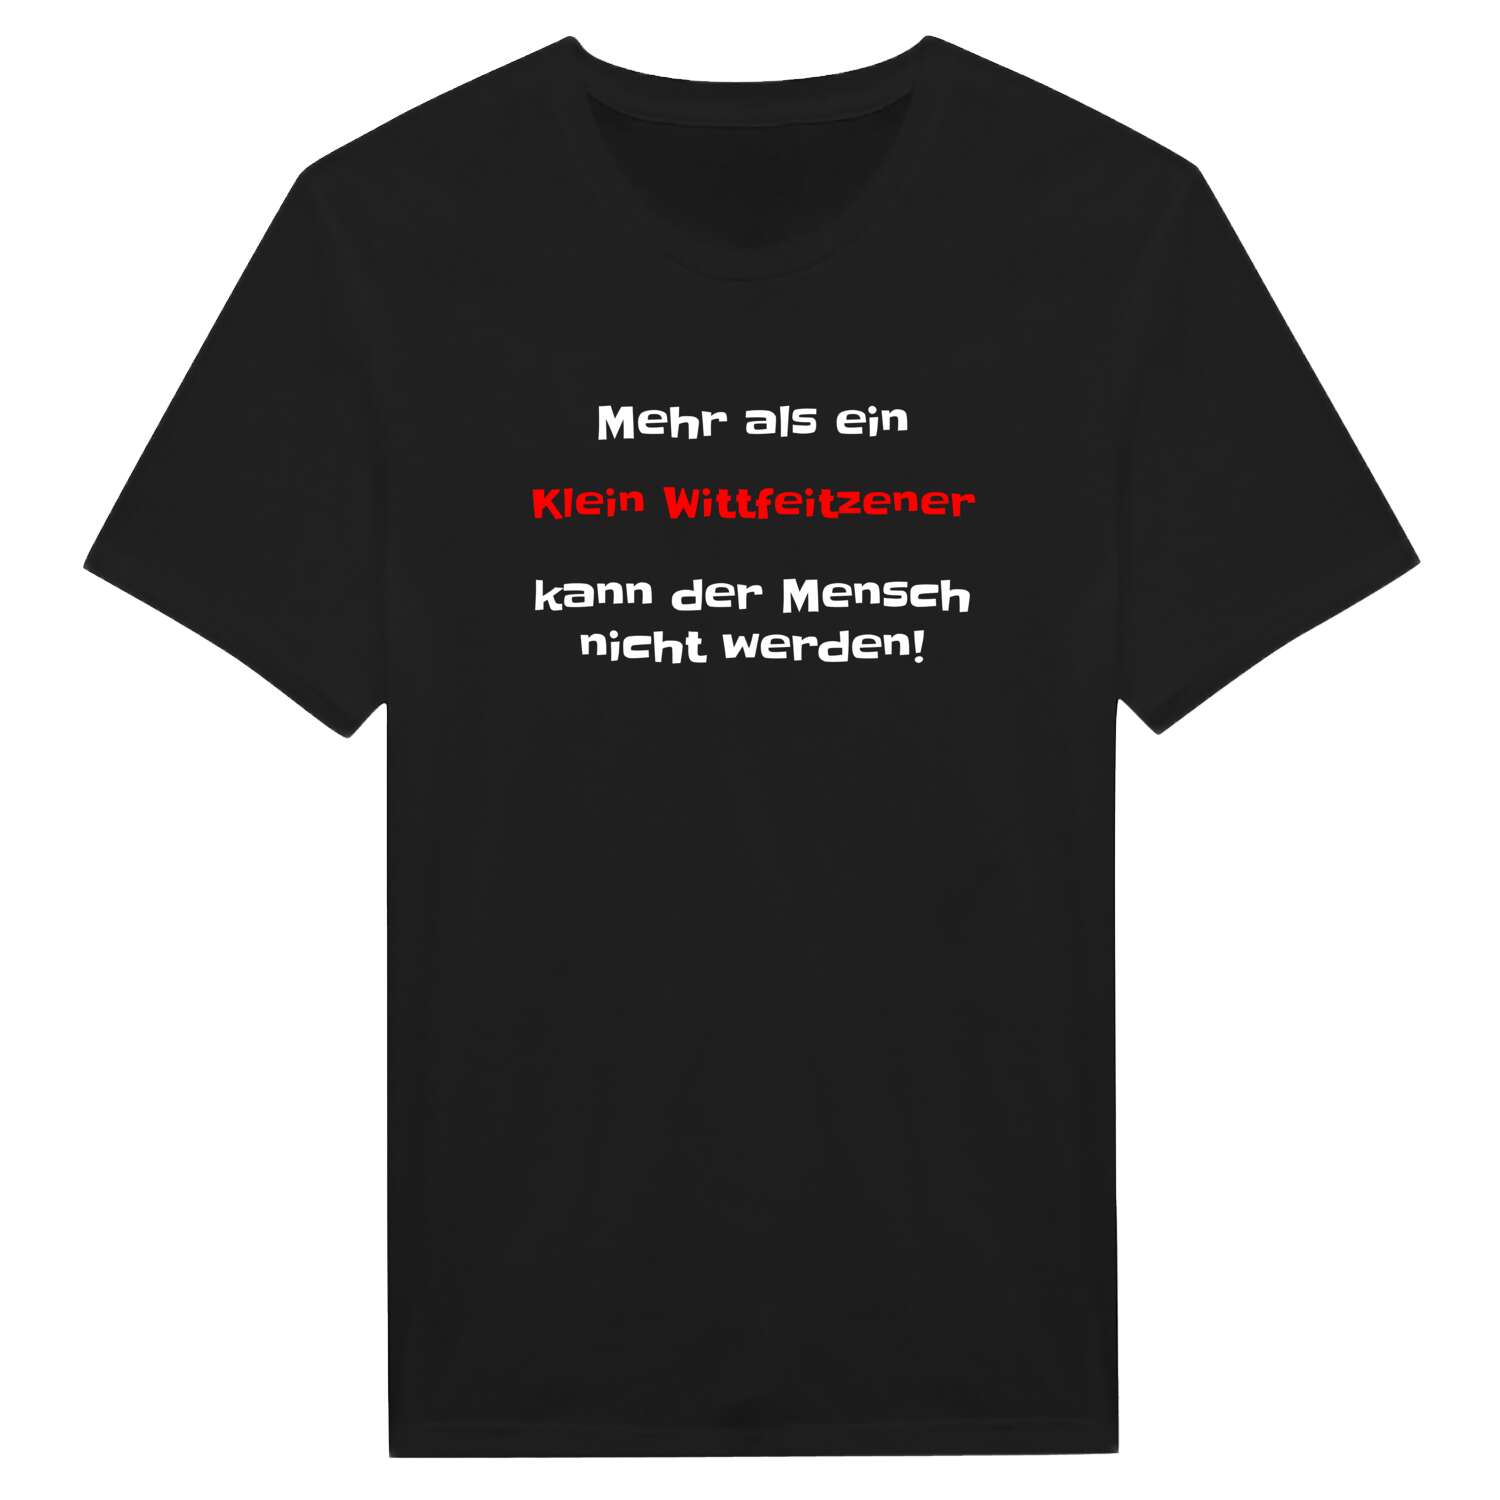 Klein Wittfeitzen T-Shirt »Mehr als ein«